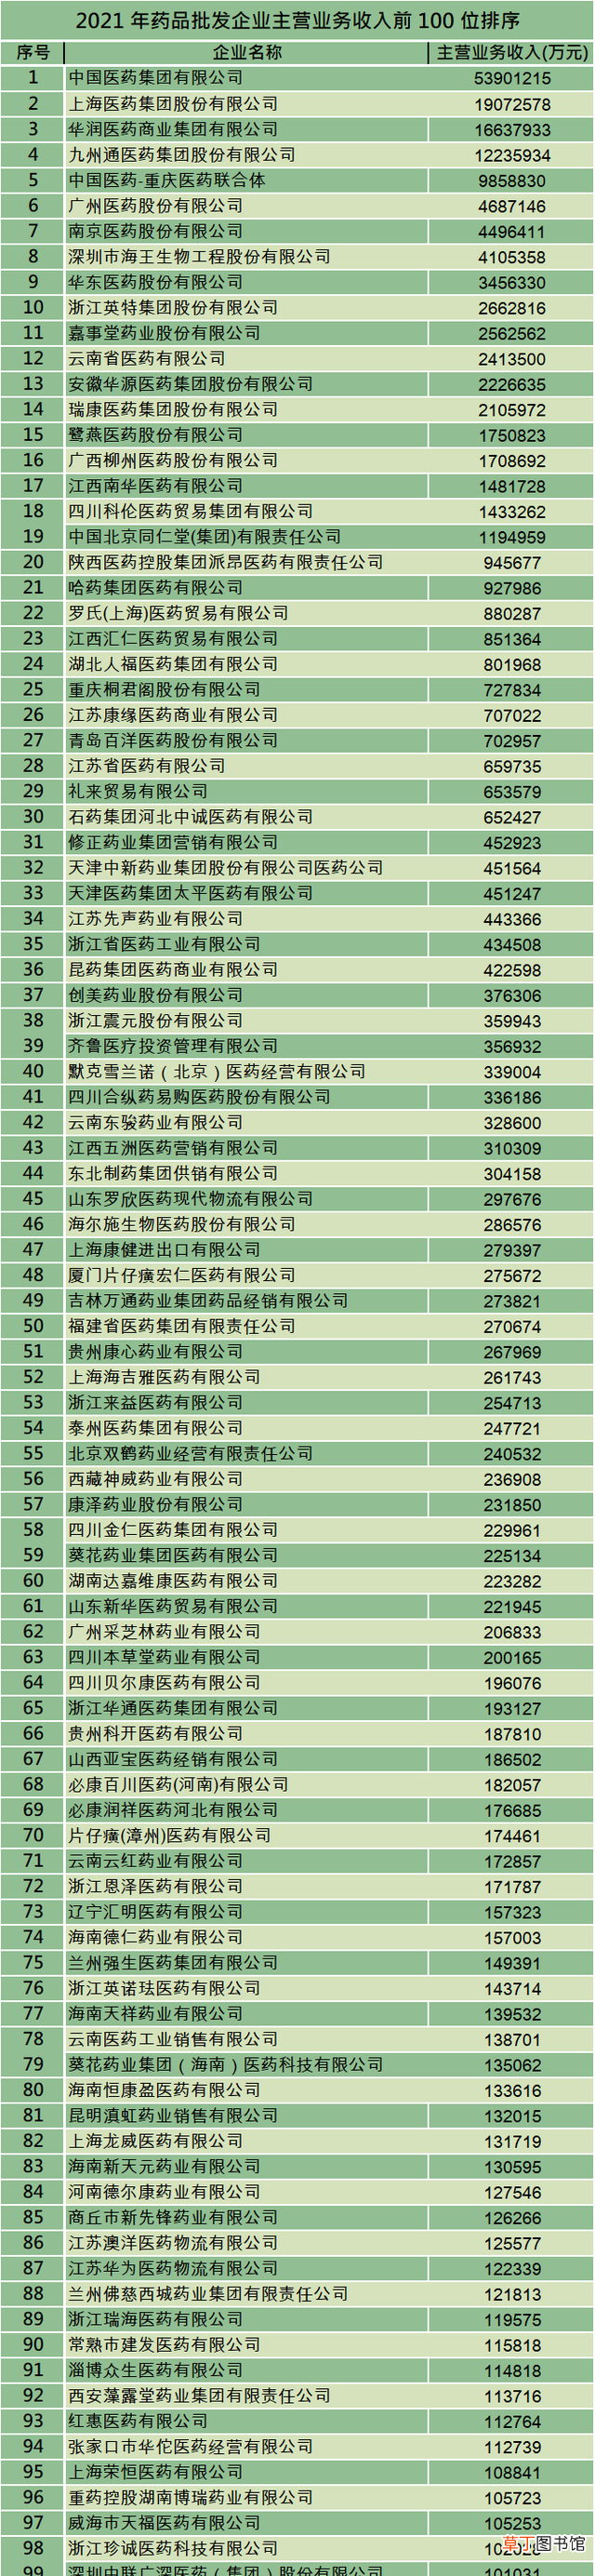 中国药店百强榜单公布 哪些药店是正规大药房